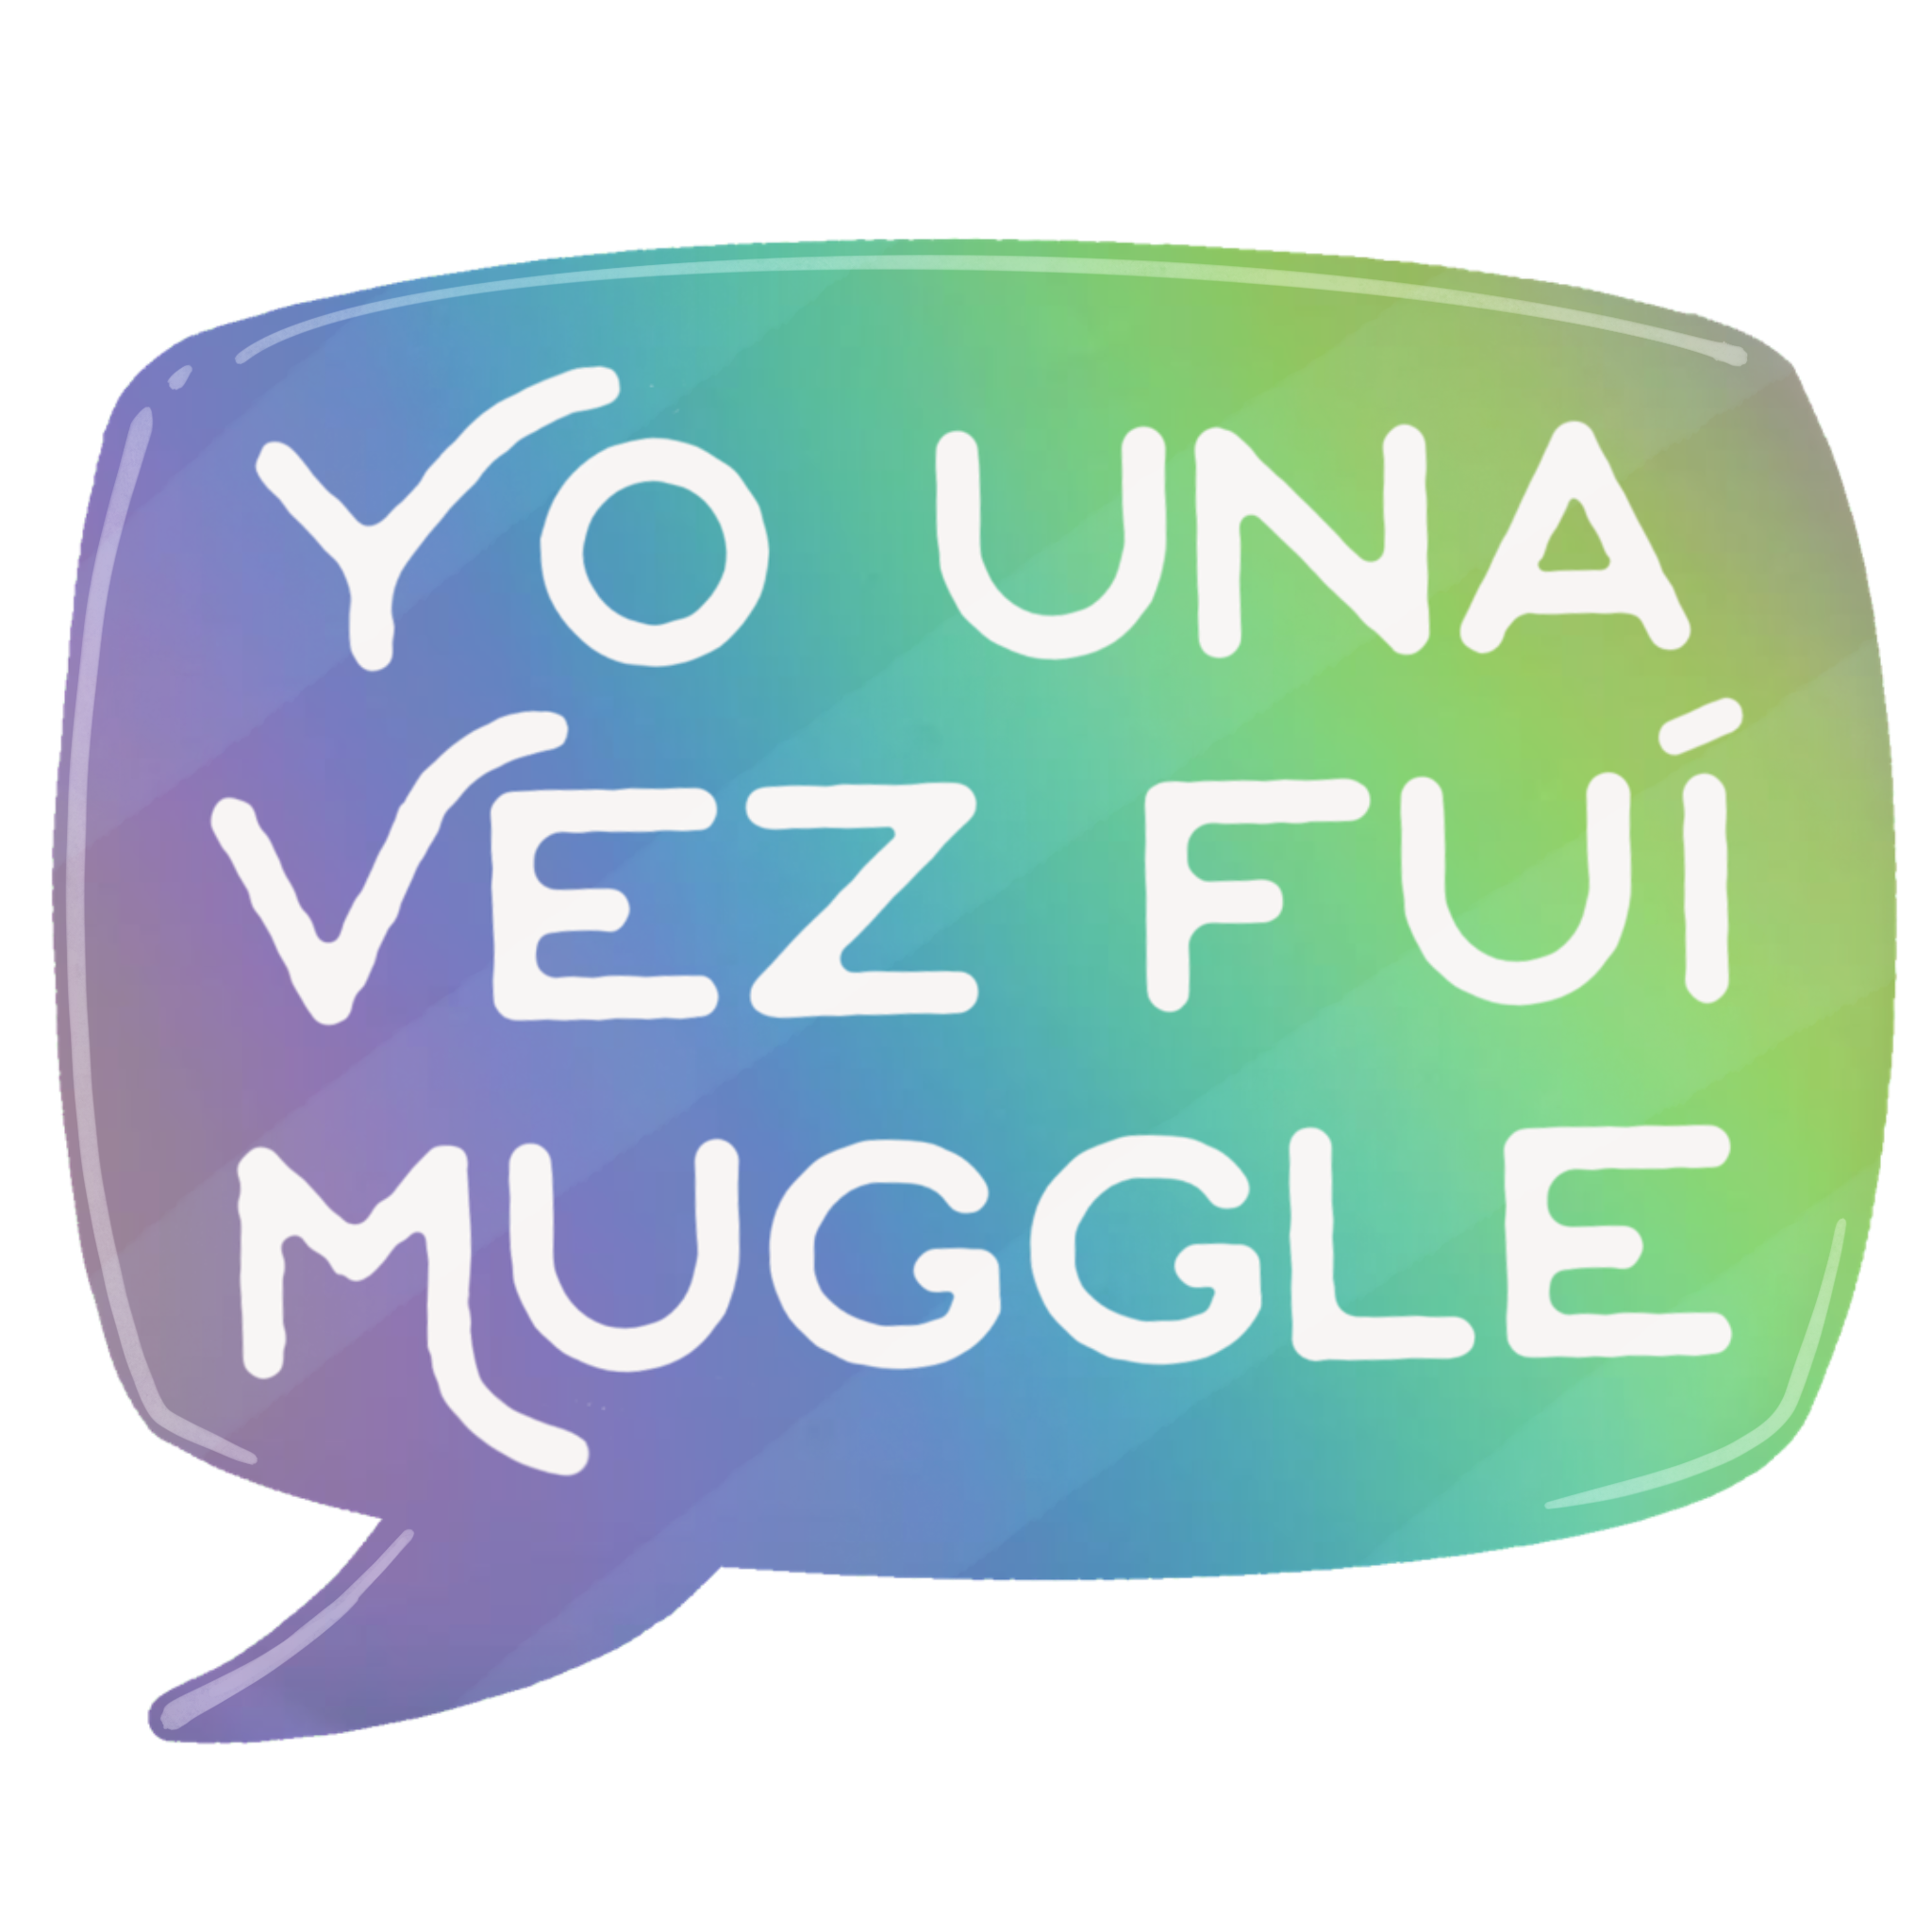 Muggle